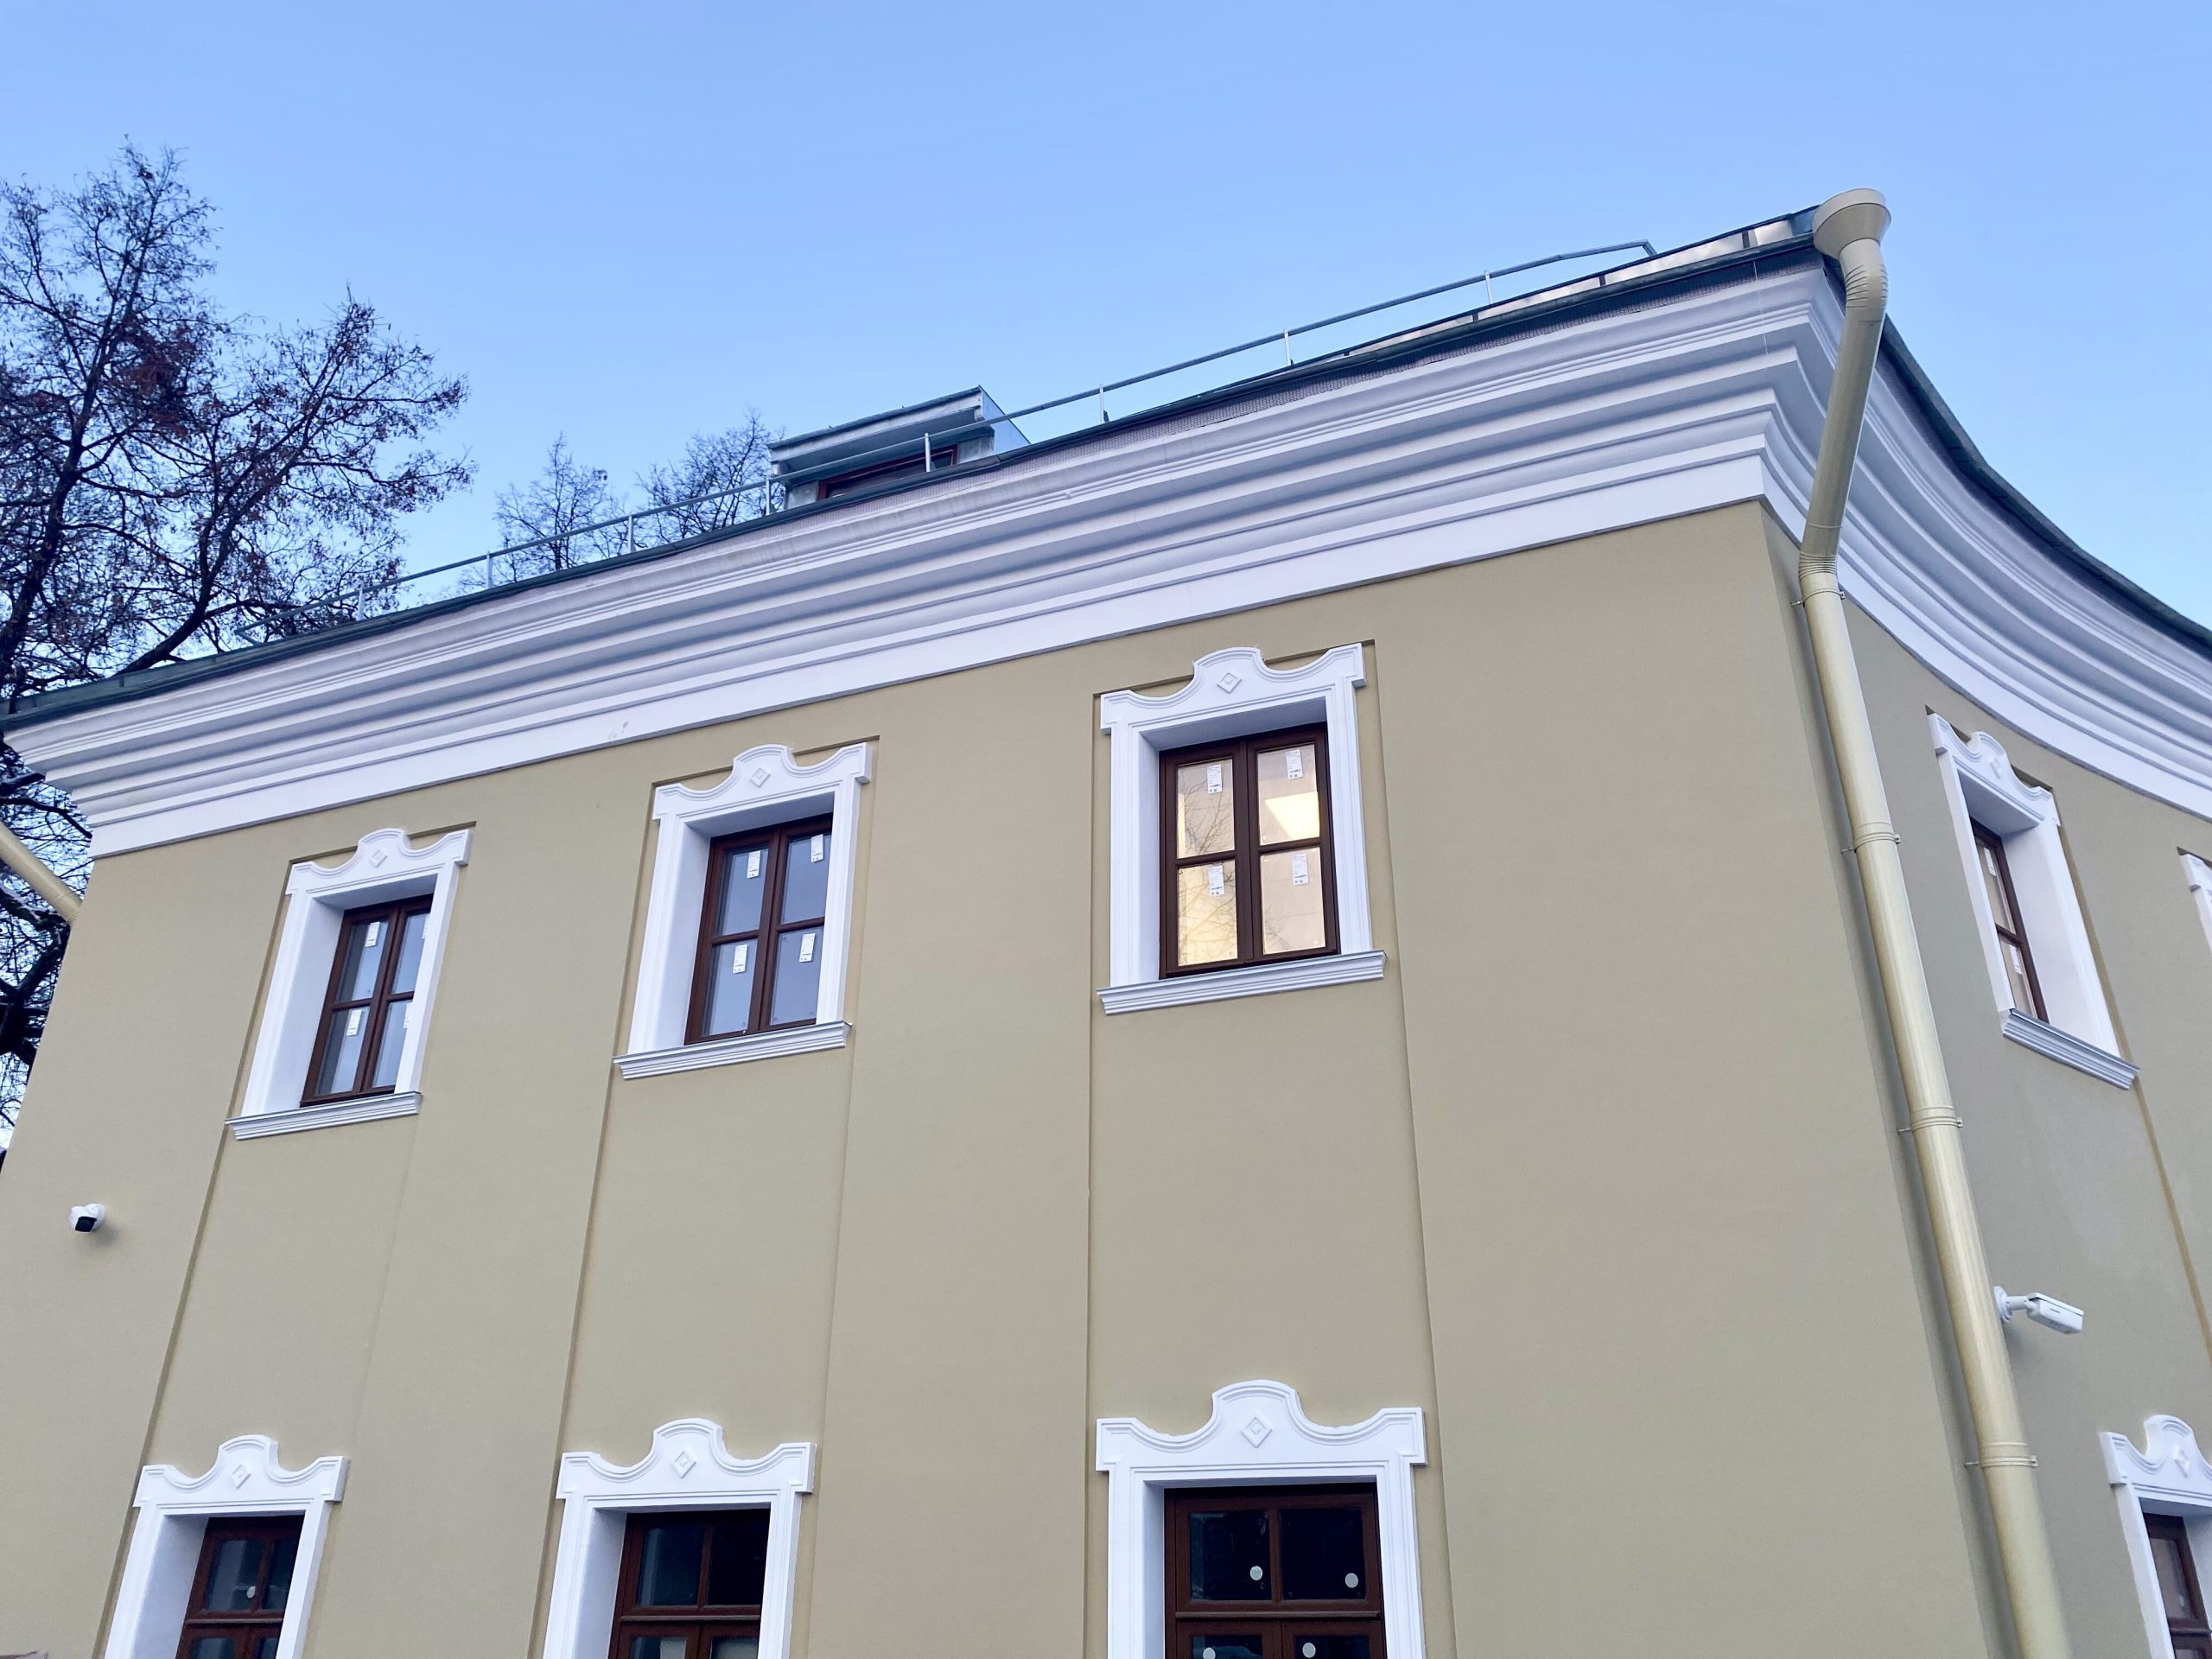 Реставрацию завершили по адресу: улица Старая Басманная, дом 15А, строение 15. Фото: пресс-служба Мосгорнаследия